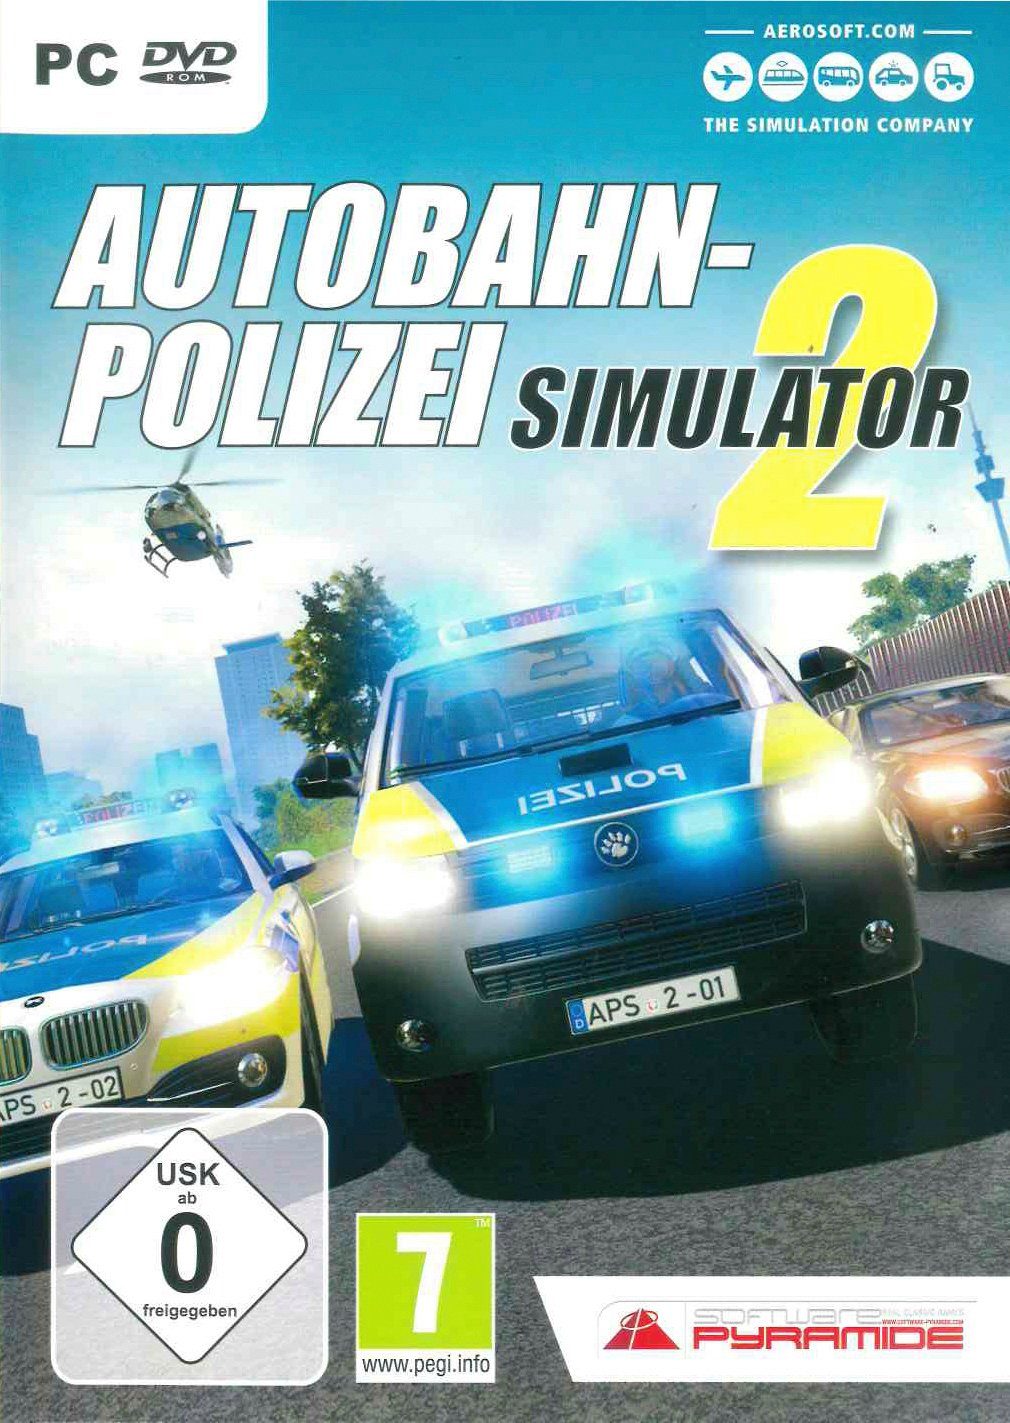 Neue Ankunft Autobahn-Polizei Simulator 2 PC